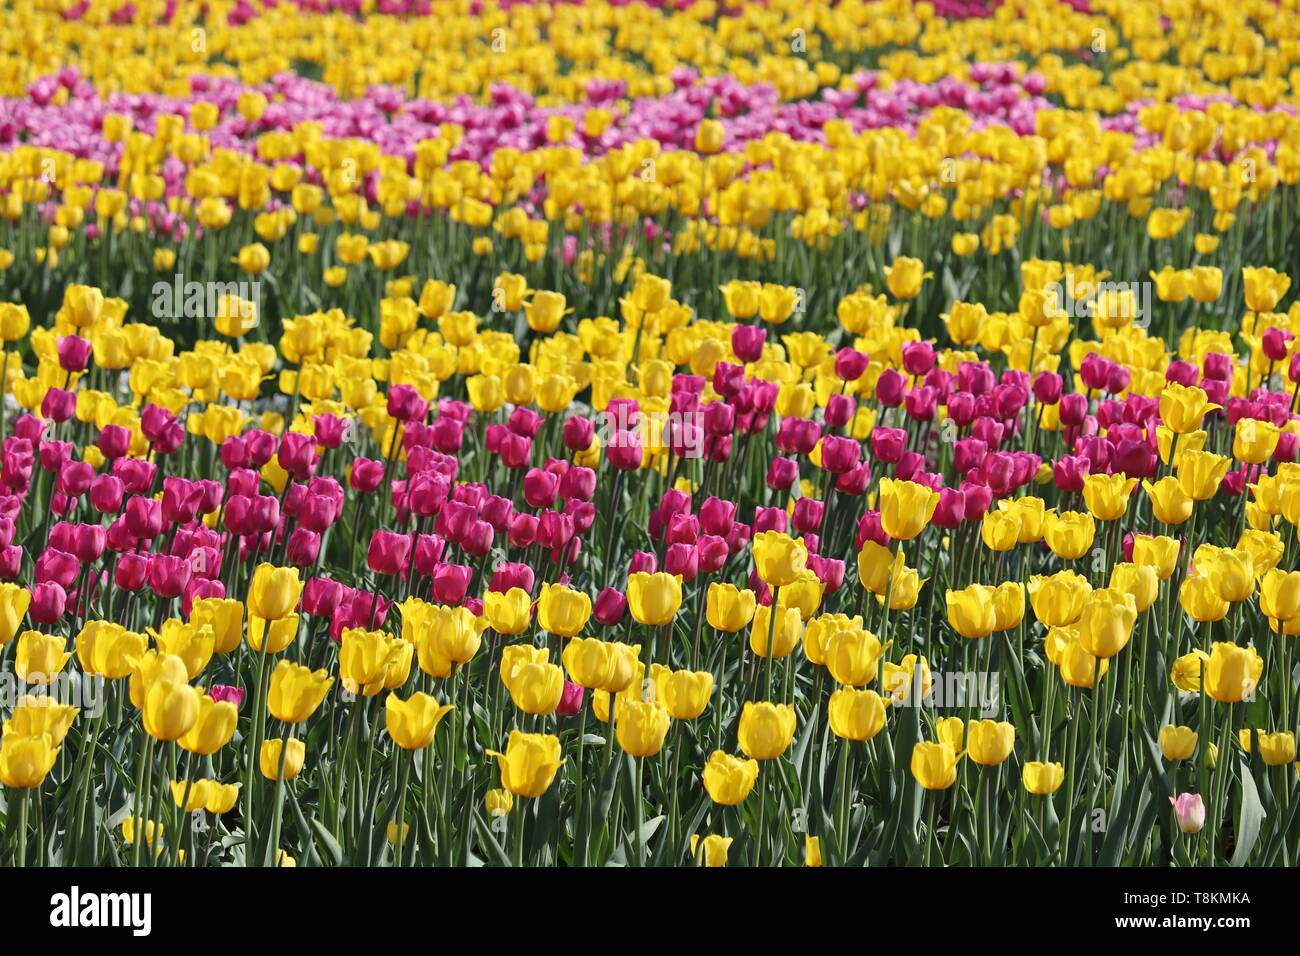 Domaine de tulipes en fleurs en journée ensoleillée, selective focus. Jaune et violet fleurs tulipes colorées, floral background Banque D'Images